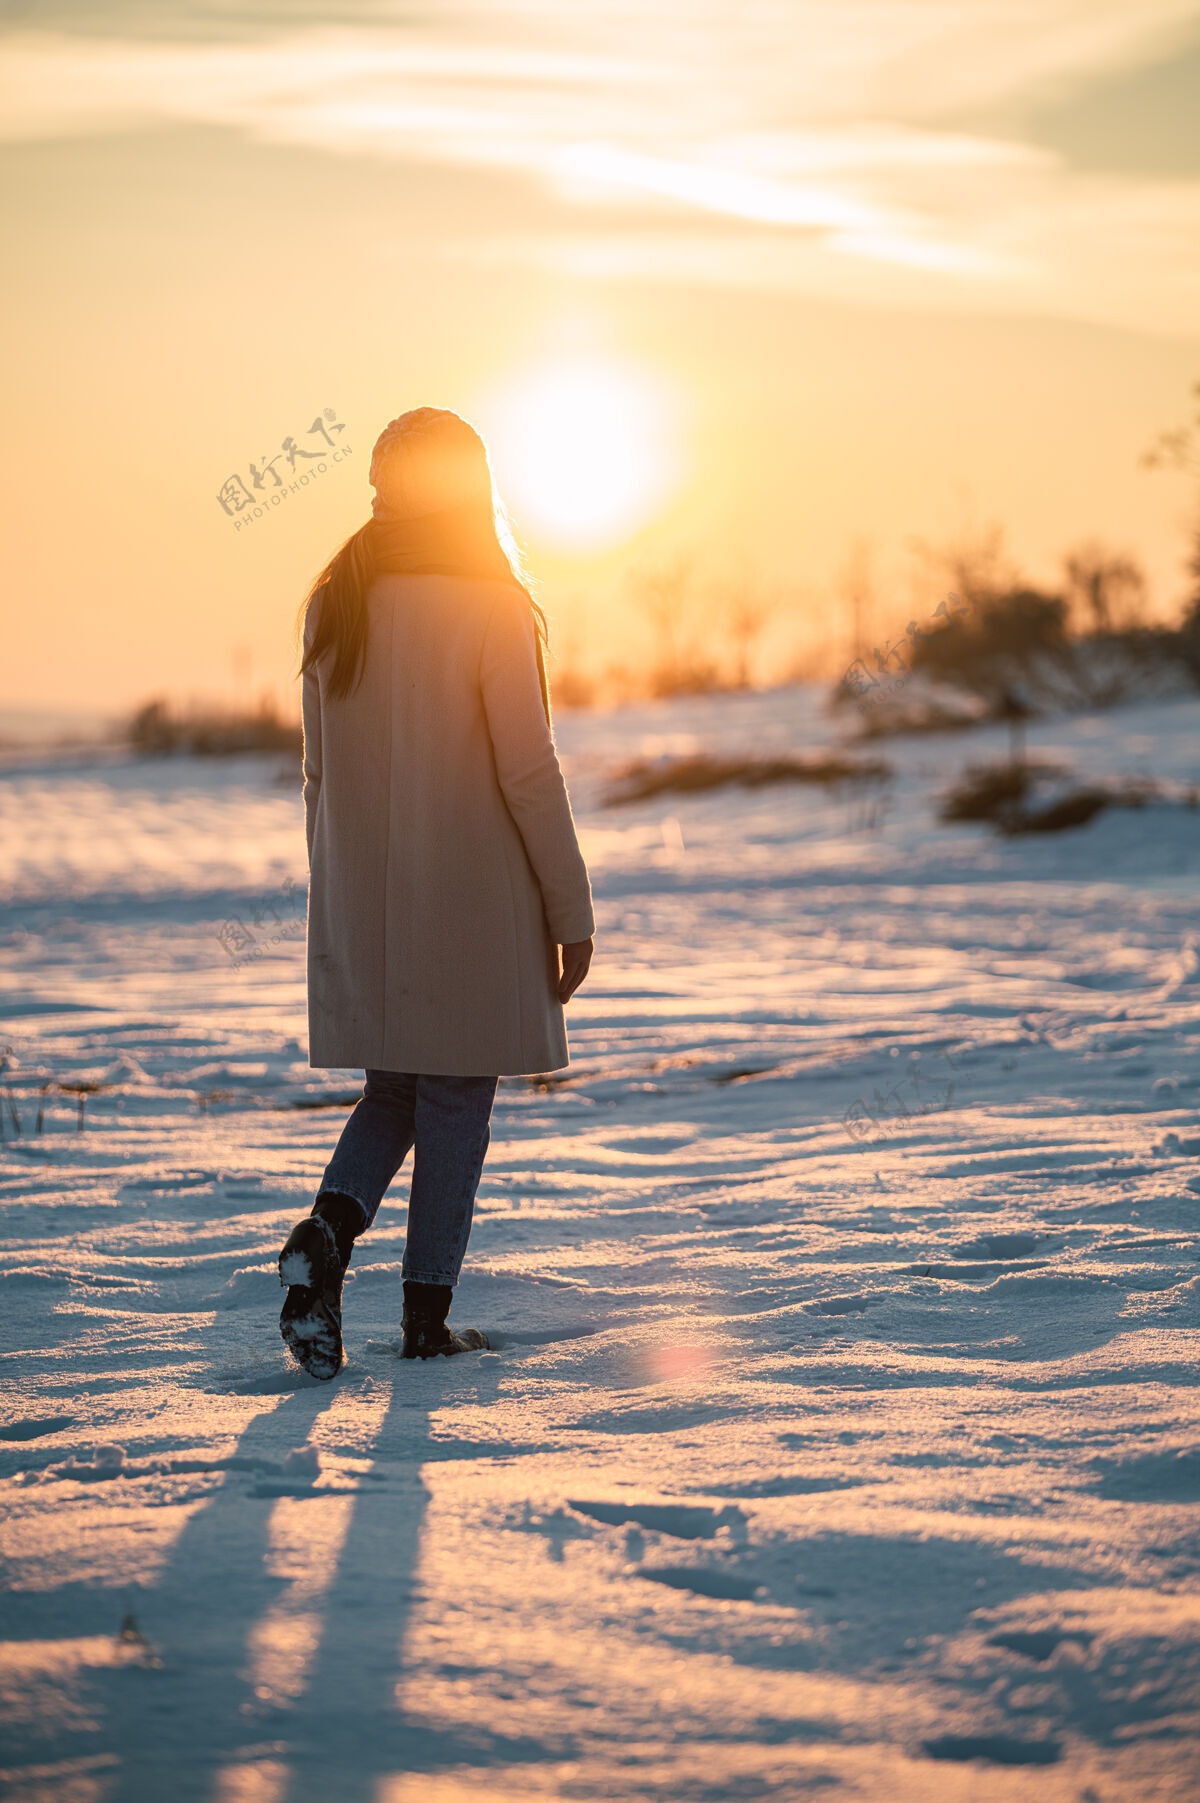 匿名一个穿着暖和衣服的女人独自站在雪白的草地上 欣赏冬日乡间如画的日落阳光背景风景